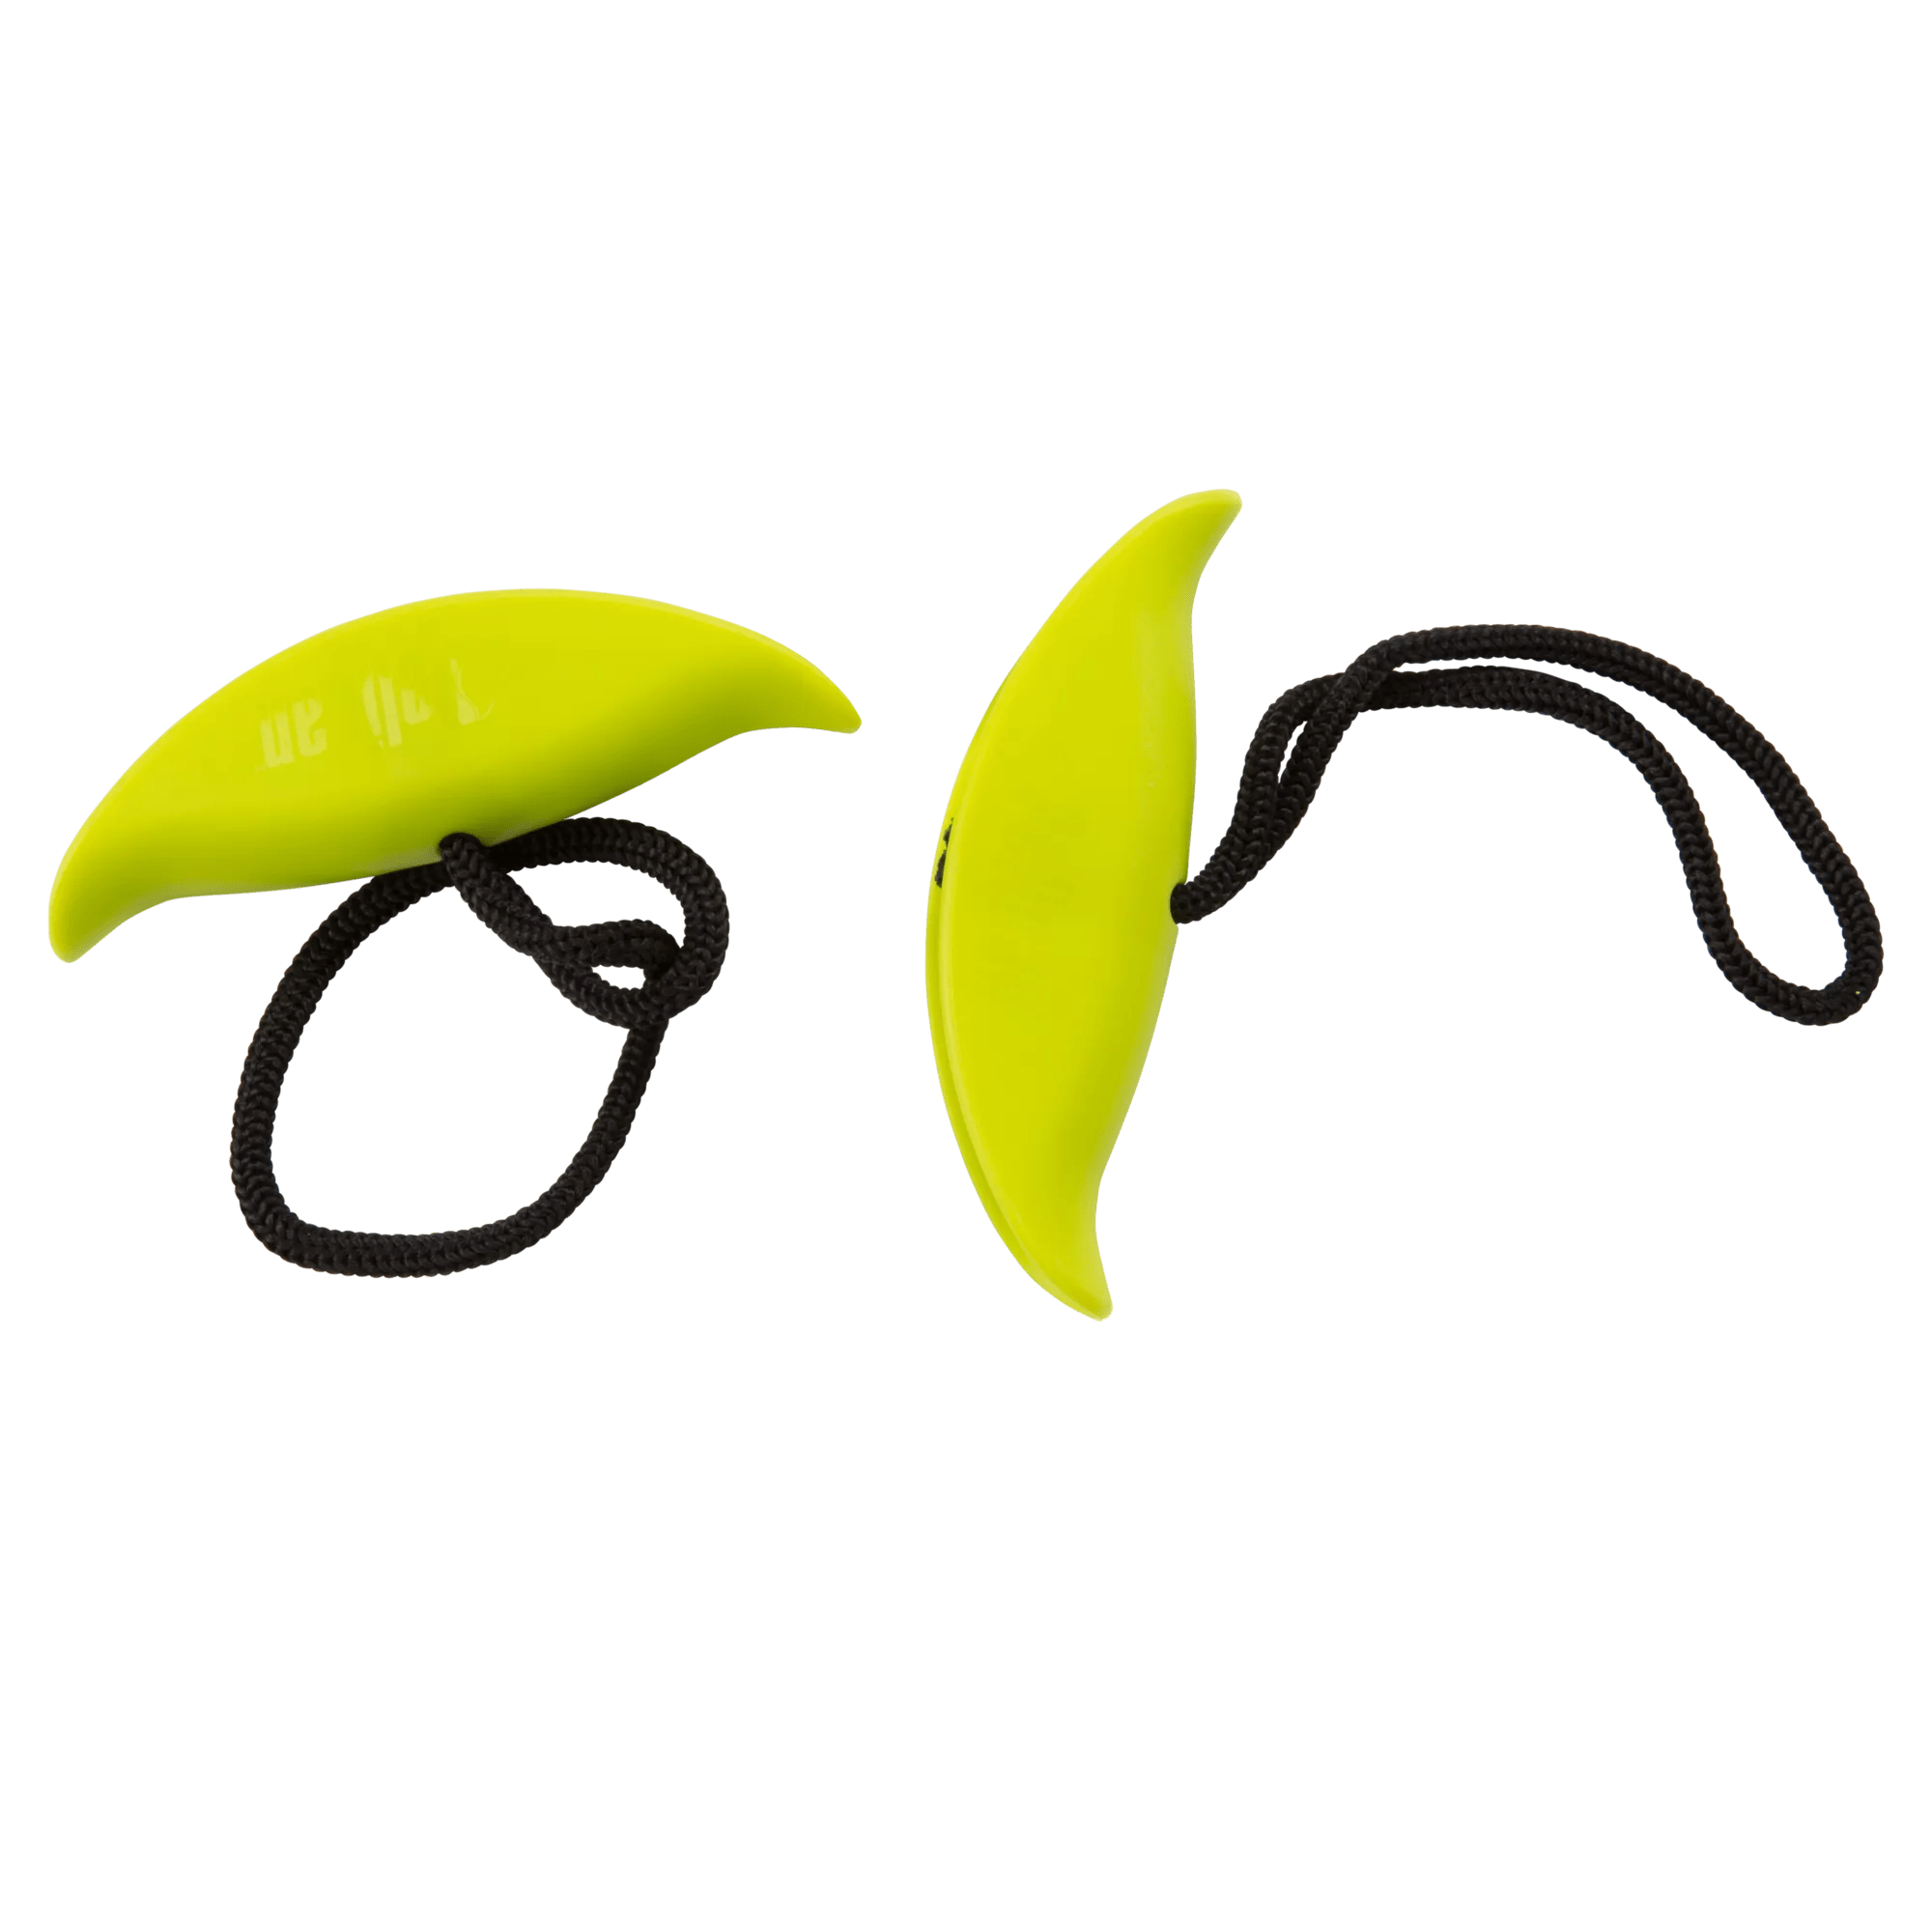 PELICAN - Poignées de transport standards jaunes et vertes pour kayak -  - PS1584 - ISO 